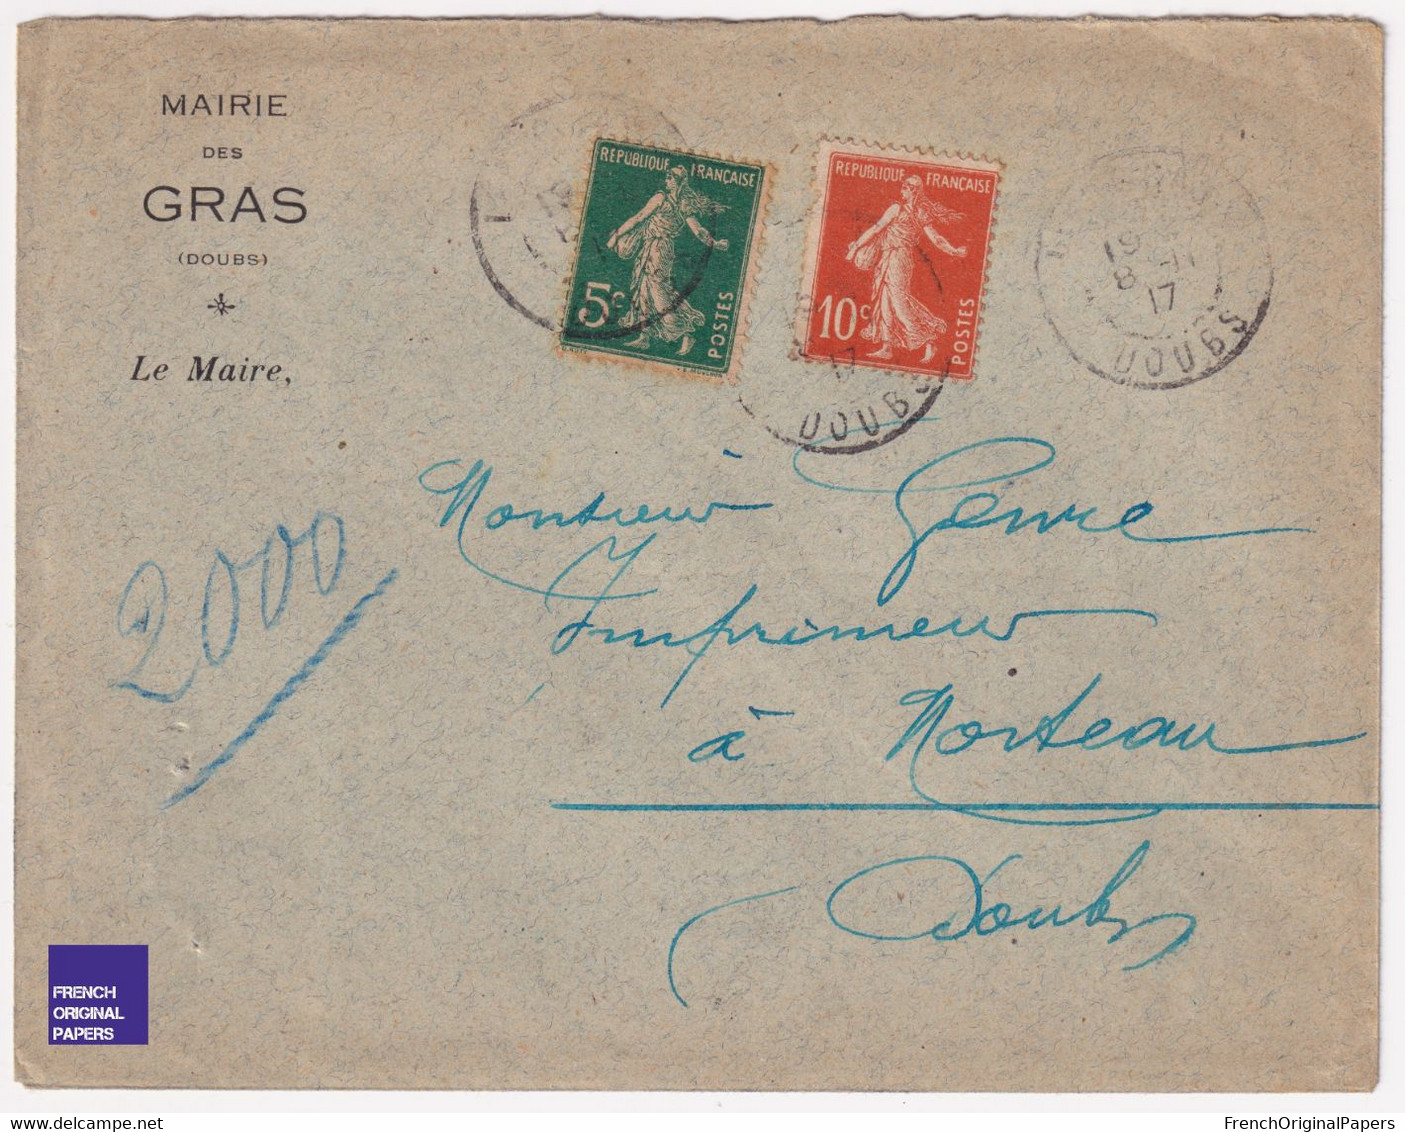 Rare Enveloppe Mairie Des Gras (Les) / Doubs 1915/20 - Publicité Entête Imprimeur Genre Morteau C7-17 - 1900 – 1949